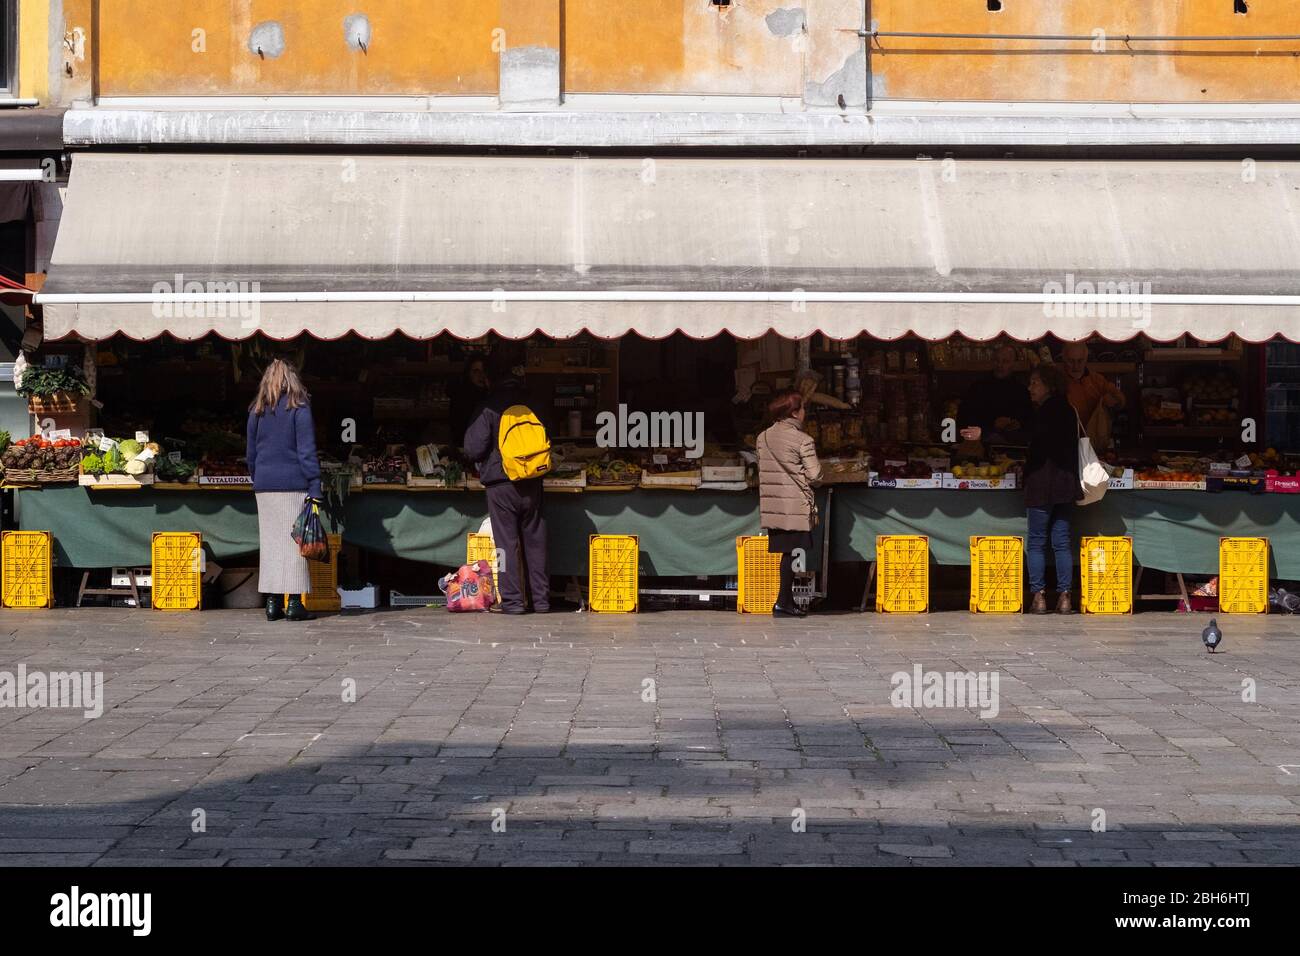 VENEZIA, ITALIA - APRILE 2020: Si acquistano verdure al mercato di Rialto durante la chiusura nazionale per la pandemia Covid-19. Foto Stock